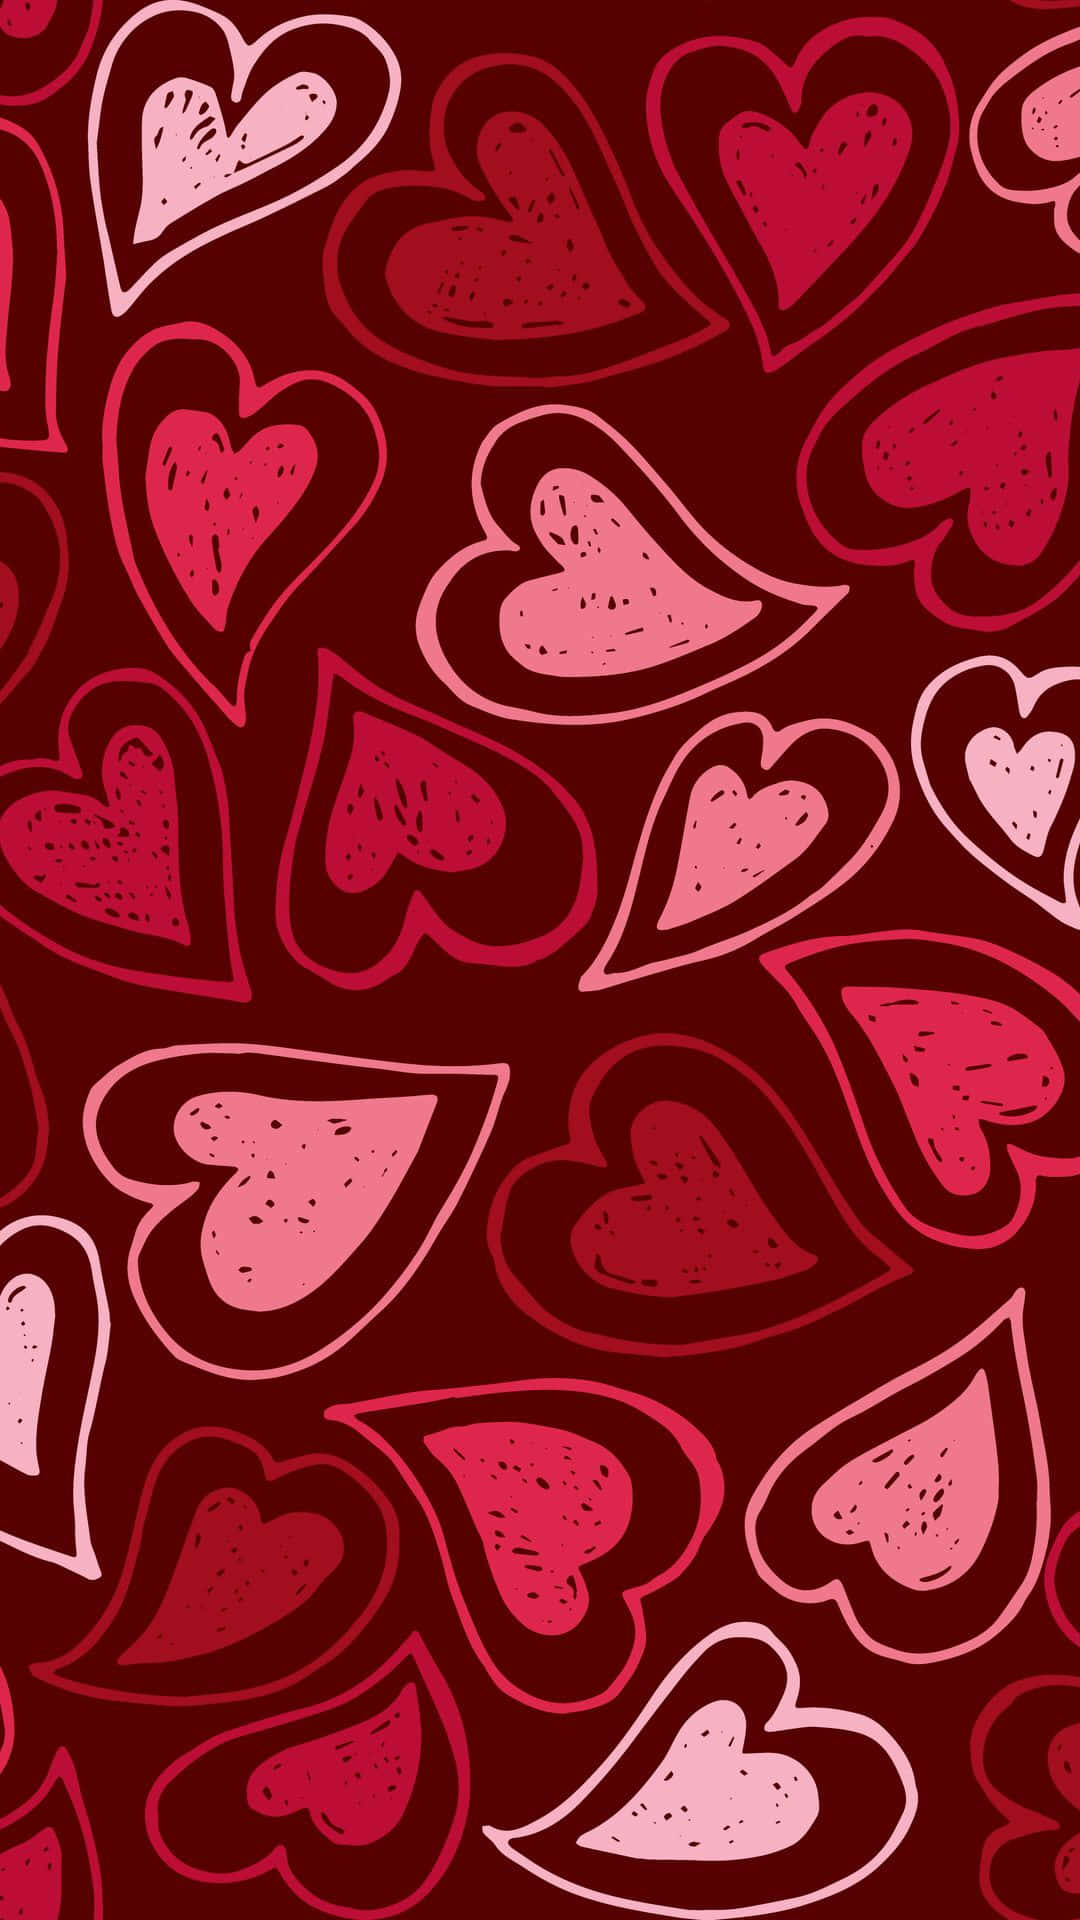 Free Cute Red Iphone Wallpaper Downloads, [100+] Cute Red Iphone Wallpapers  for FREE 